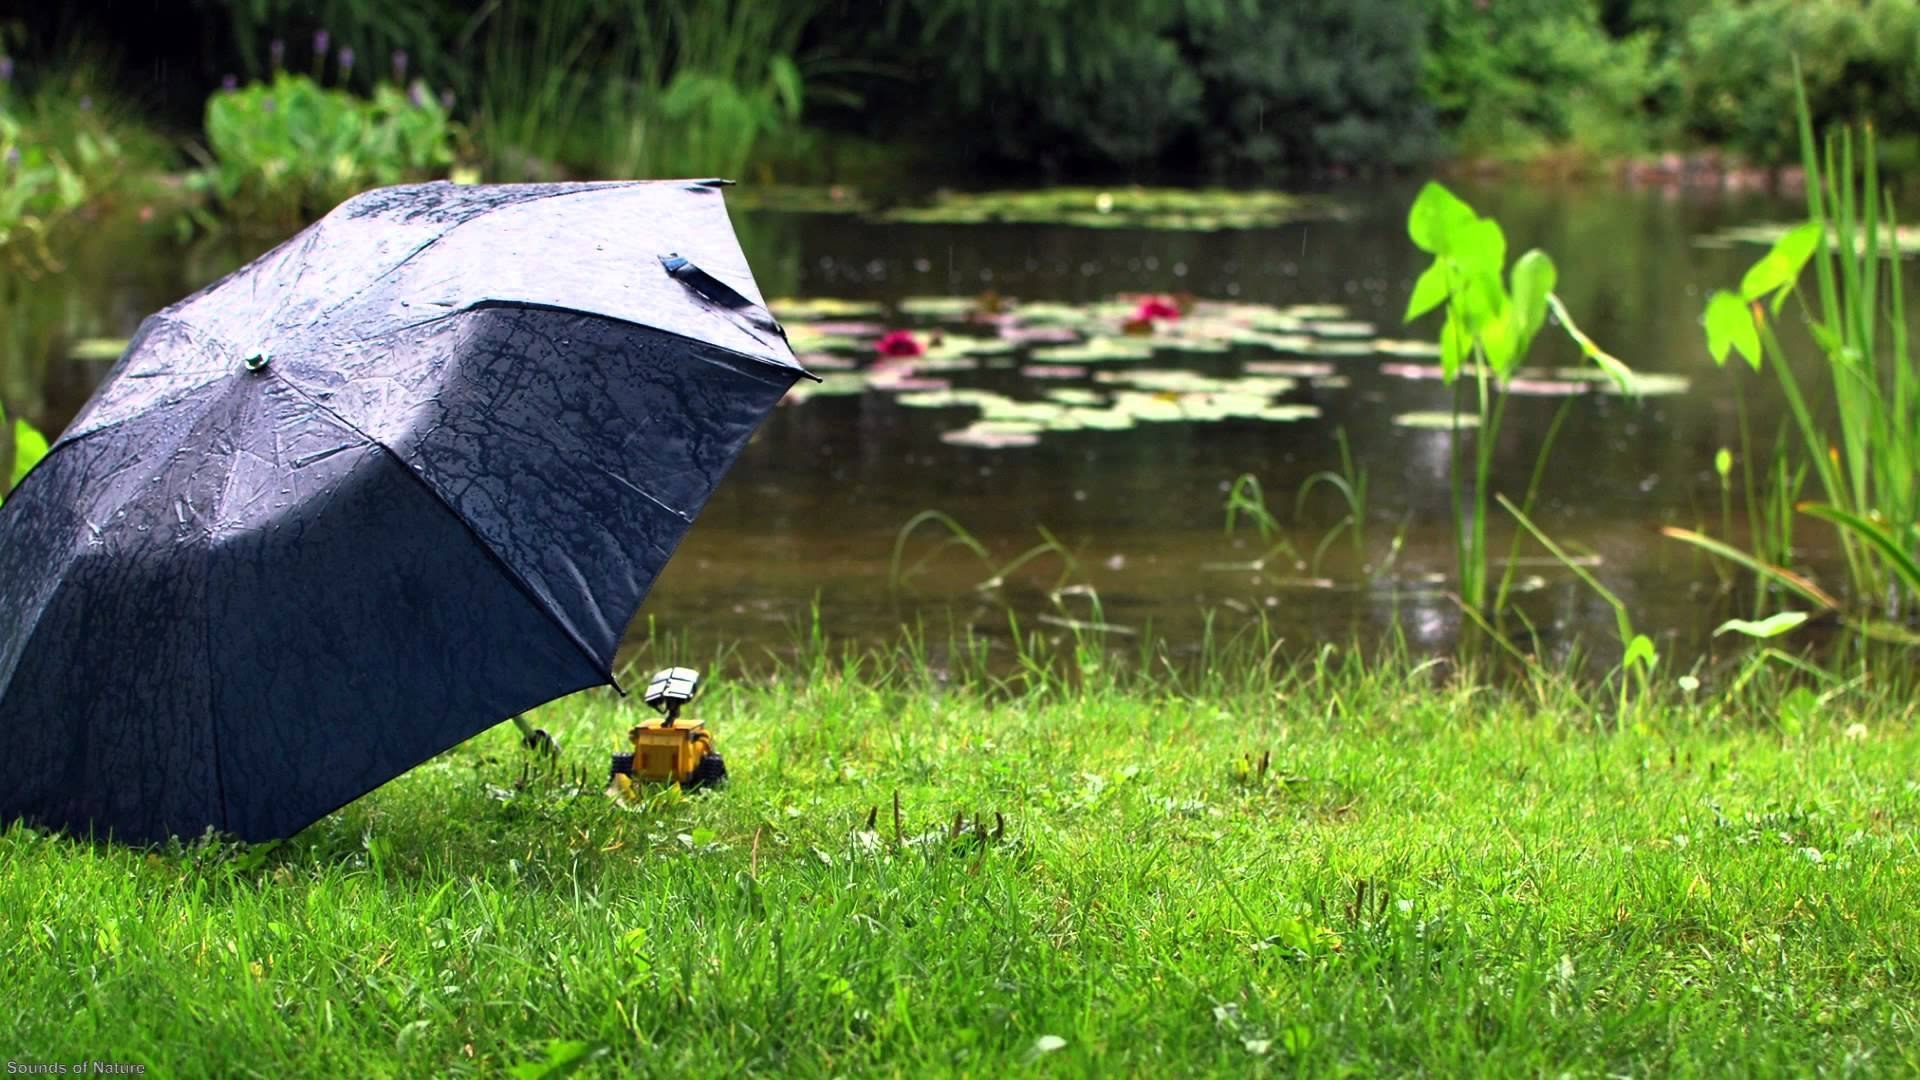 Одолжил ей зонтик. Зонтик под дождем. Зонт под дождем. Зонтик на природе. Дождевой зонт.